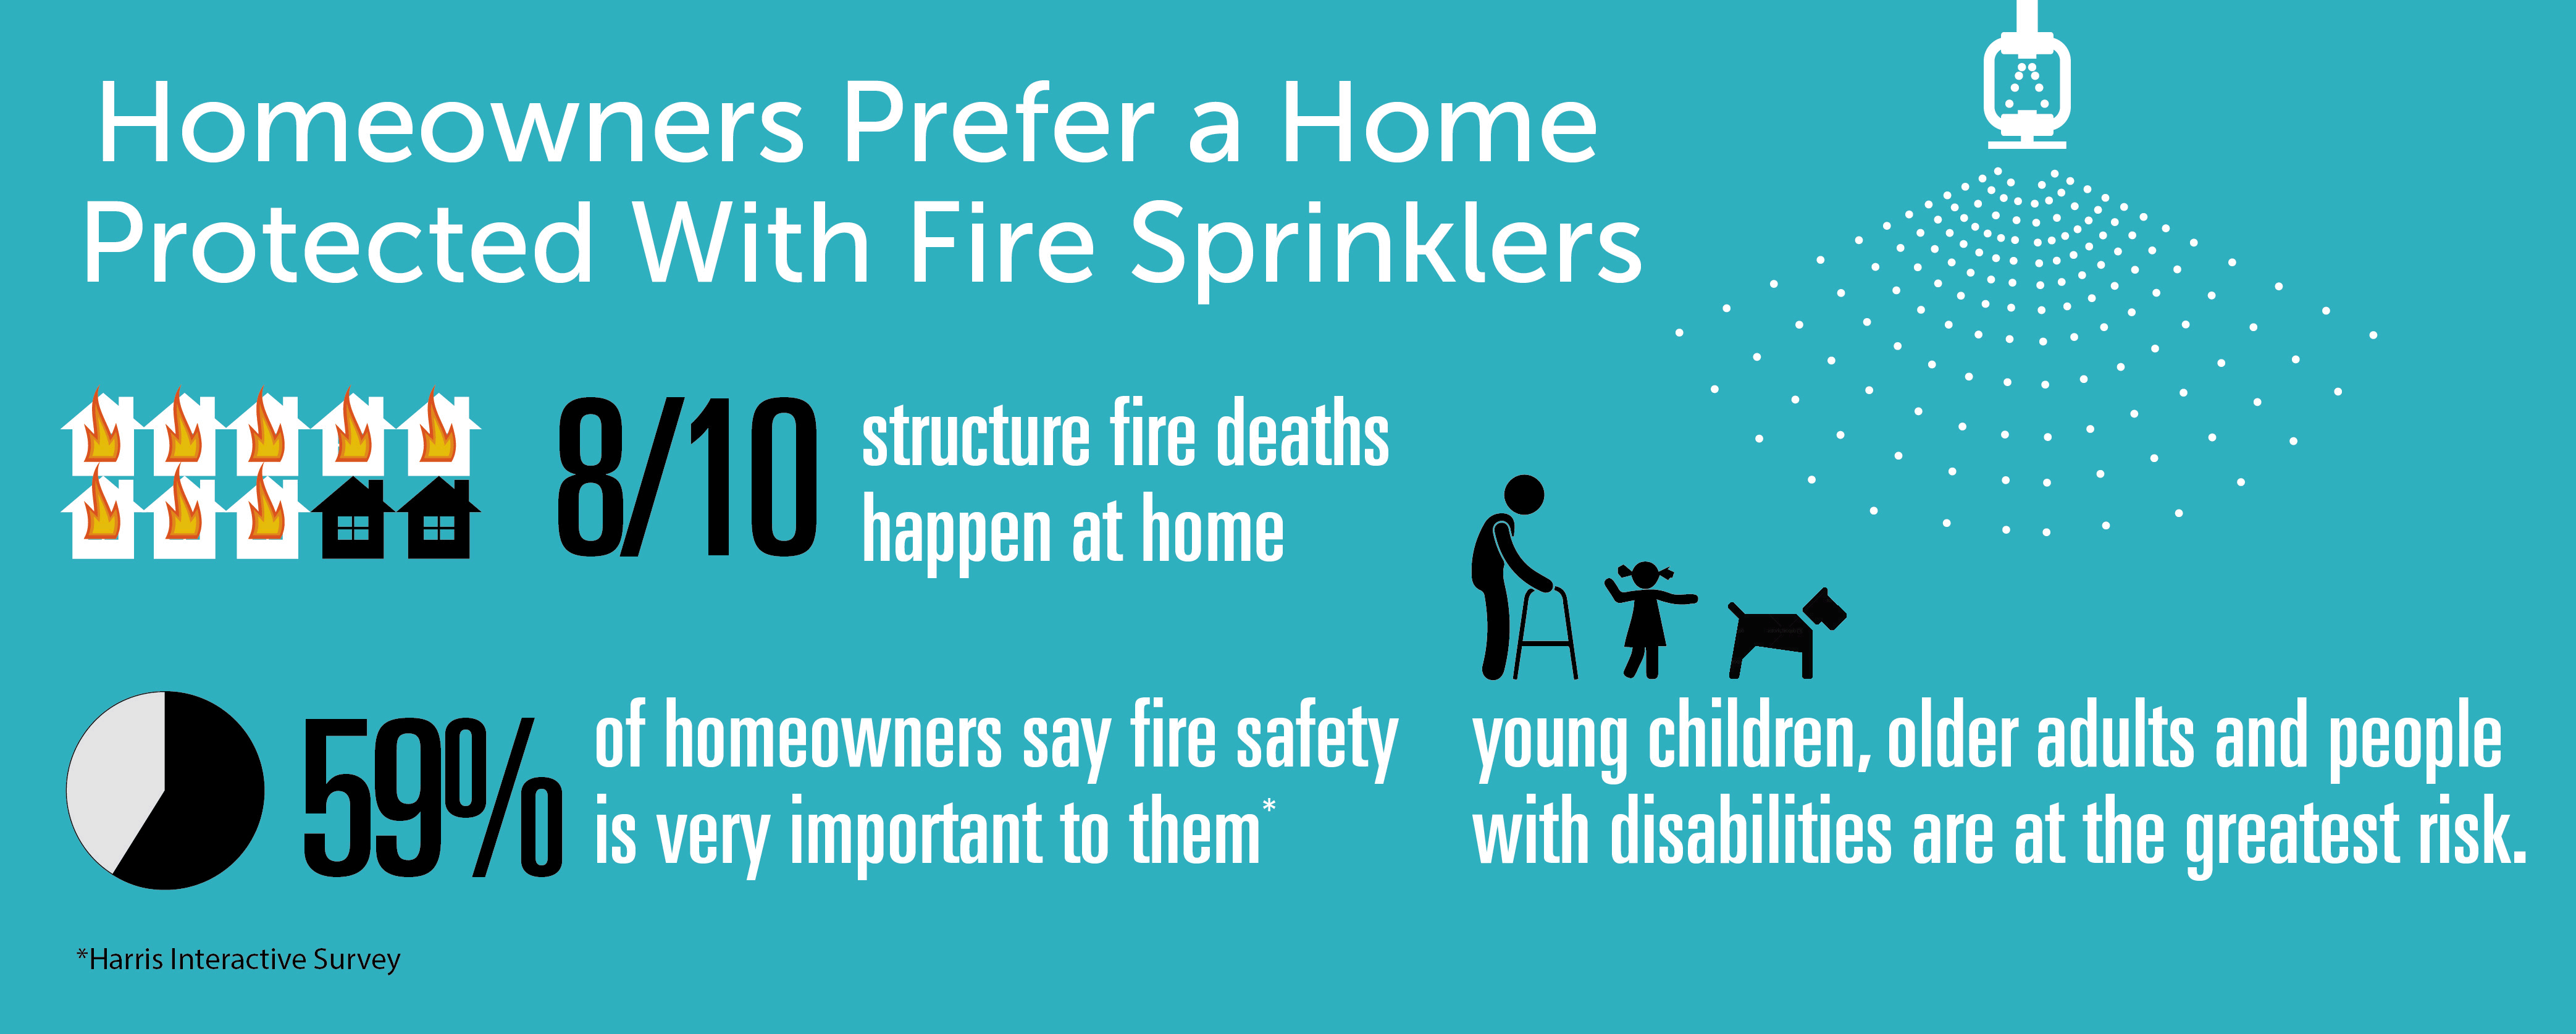 Homeowners prefer fire sprinklers